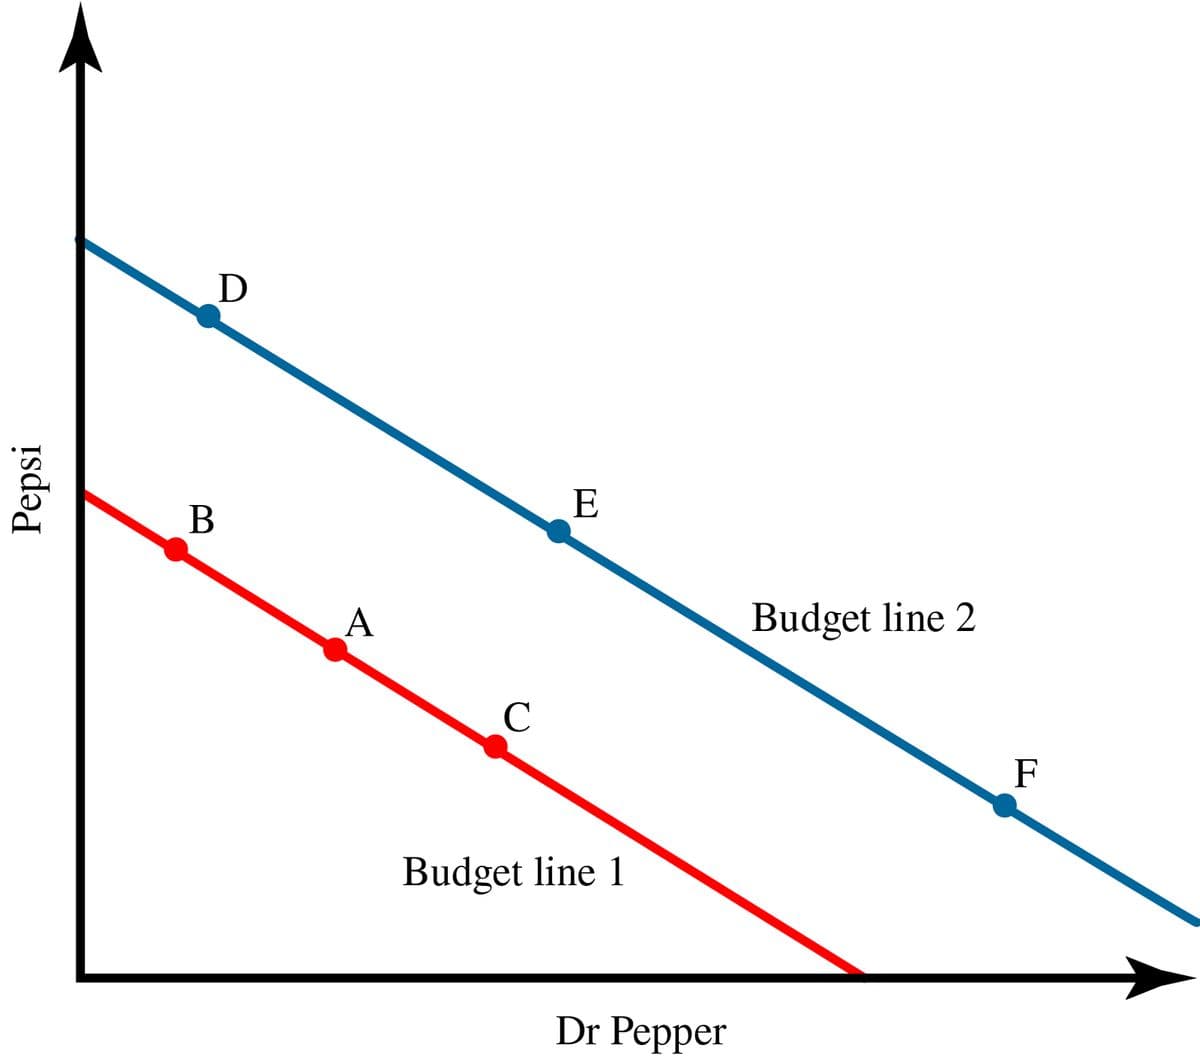 D
E
B
Budget line 2
A
C
F
Budget line 1
Dr Pepper
Pepsi
